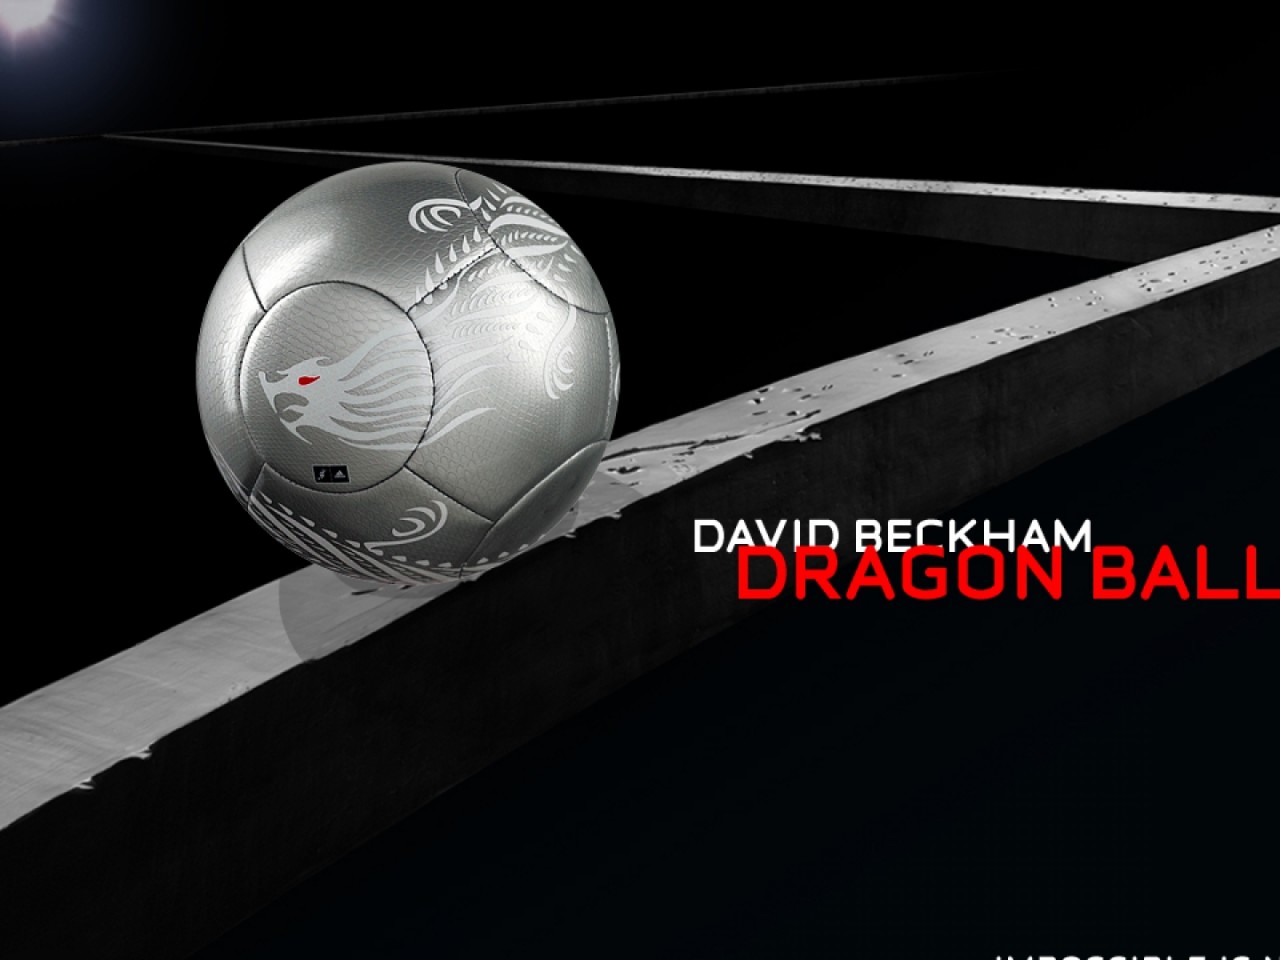 Beckham Soccer Wallpaper - High Definition, High Resolution HD Wallpapers :  High Definition, High Resolution HD Wallpapers